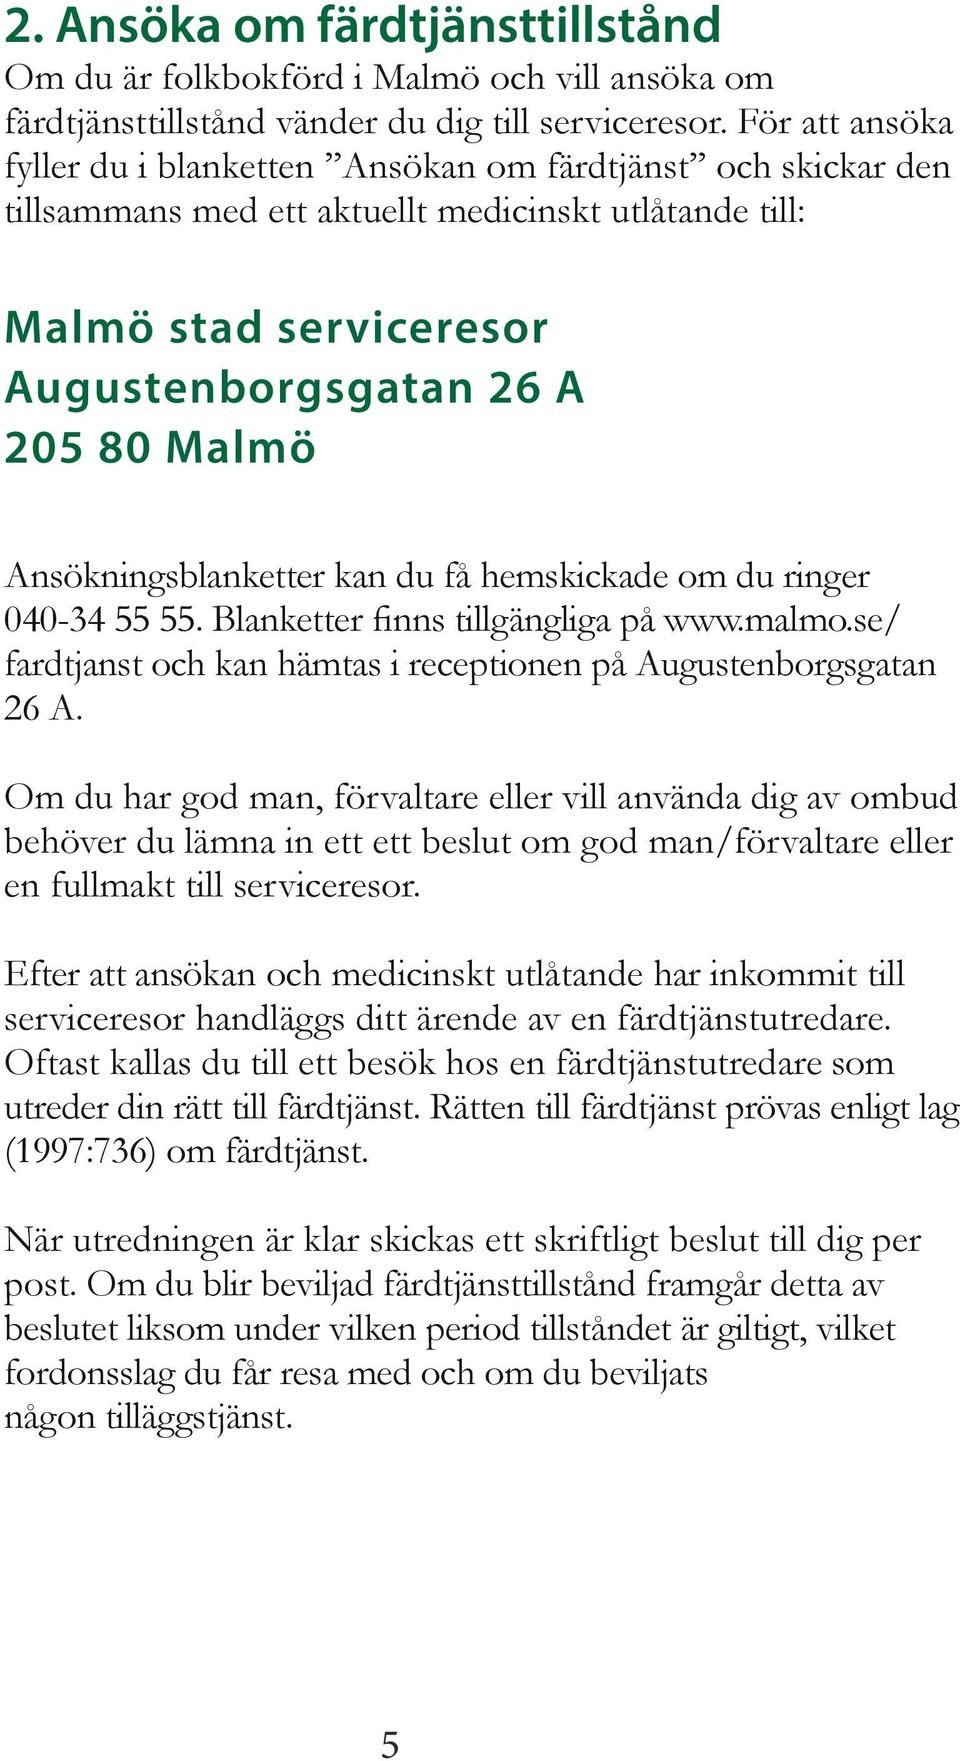 Ansökningsblanketter kan du få hemskickade om du ringer 040-34 55 55. Blanketter finns tillgängliga på www.malmo.se/ fardtjanst och kan hämtas i receptionen på Augustenborgsgatan 26 A.